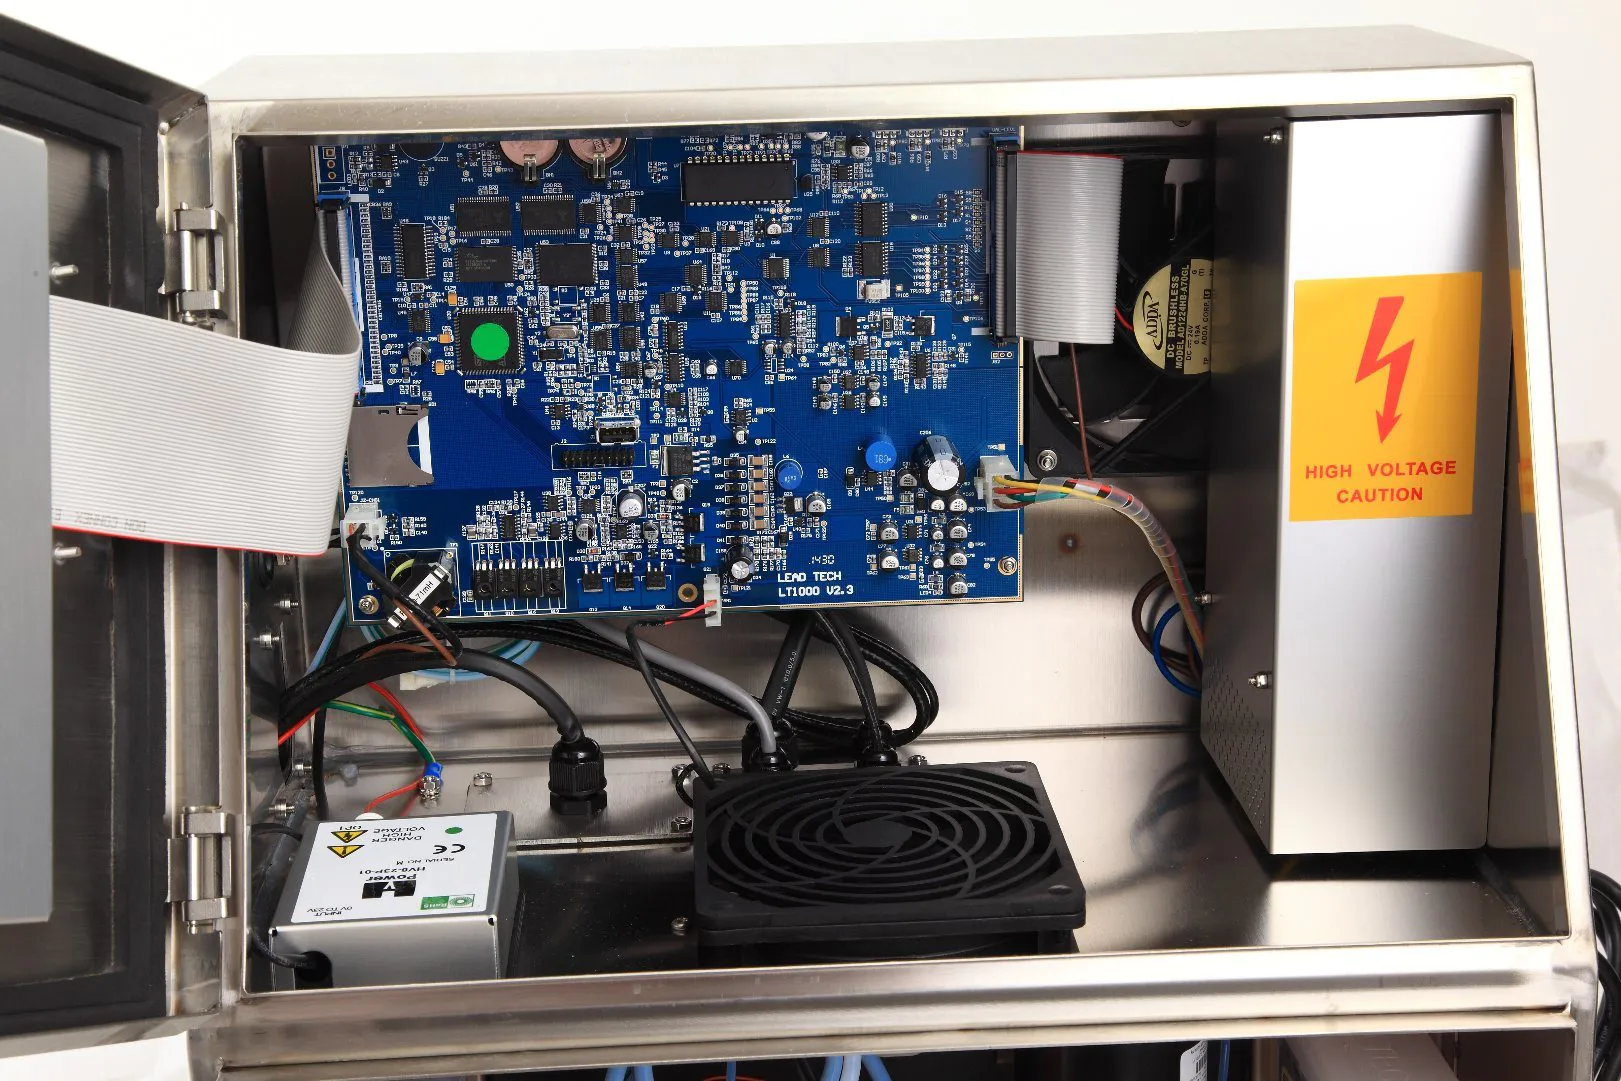 Lead Tech Lt1000s+ PVC Pipe Coding Cij Inkjet Printer